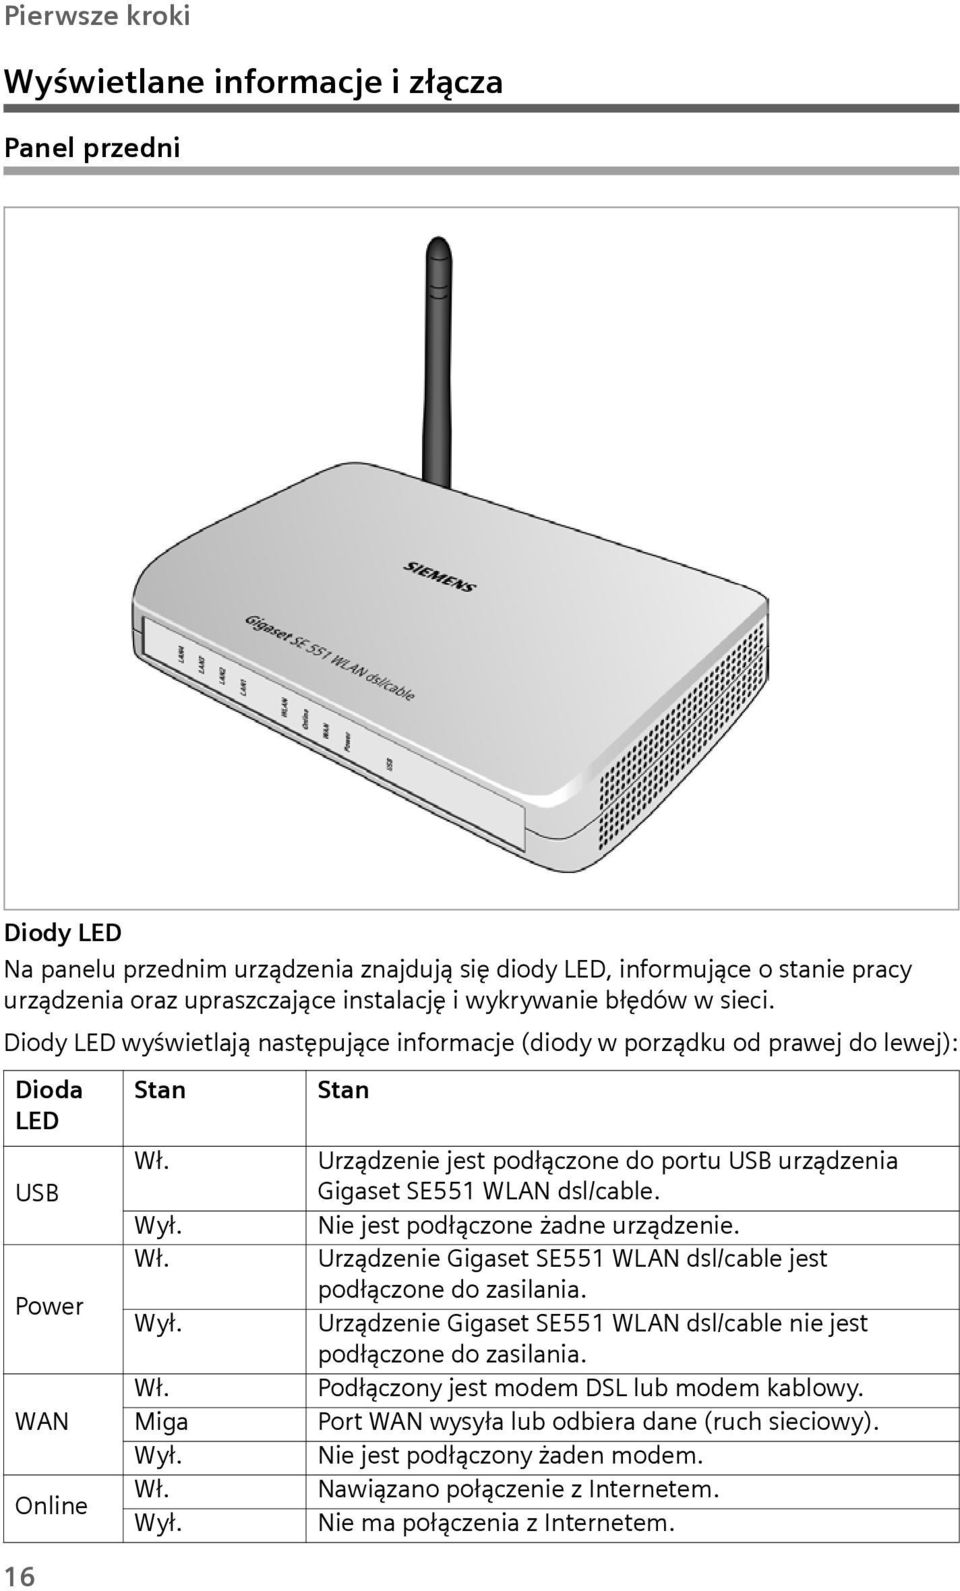 Wł. Wył. Wł. Miga Wył. Wł. Wył. Stan Urządzenie jest podłączone do portu USB urządzenia Gigaset SE551 WLAN dsl/cable. Nie jest podłączone żadne urządzenie.